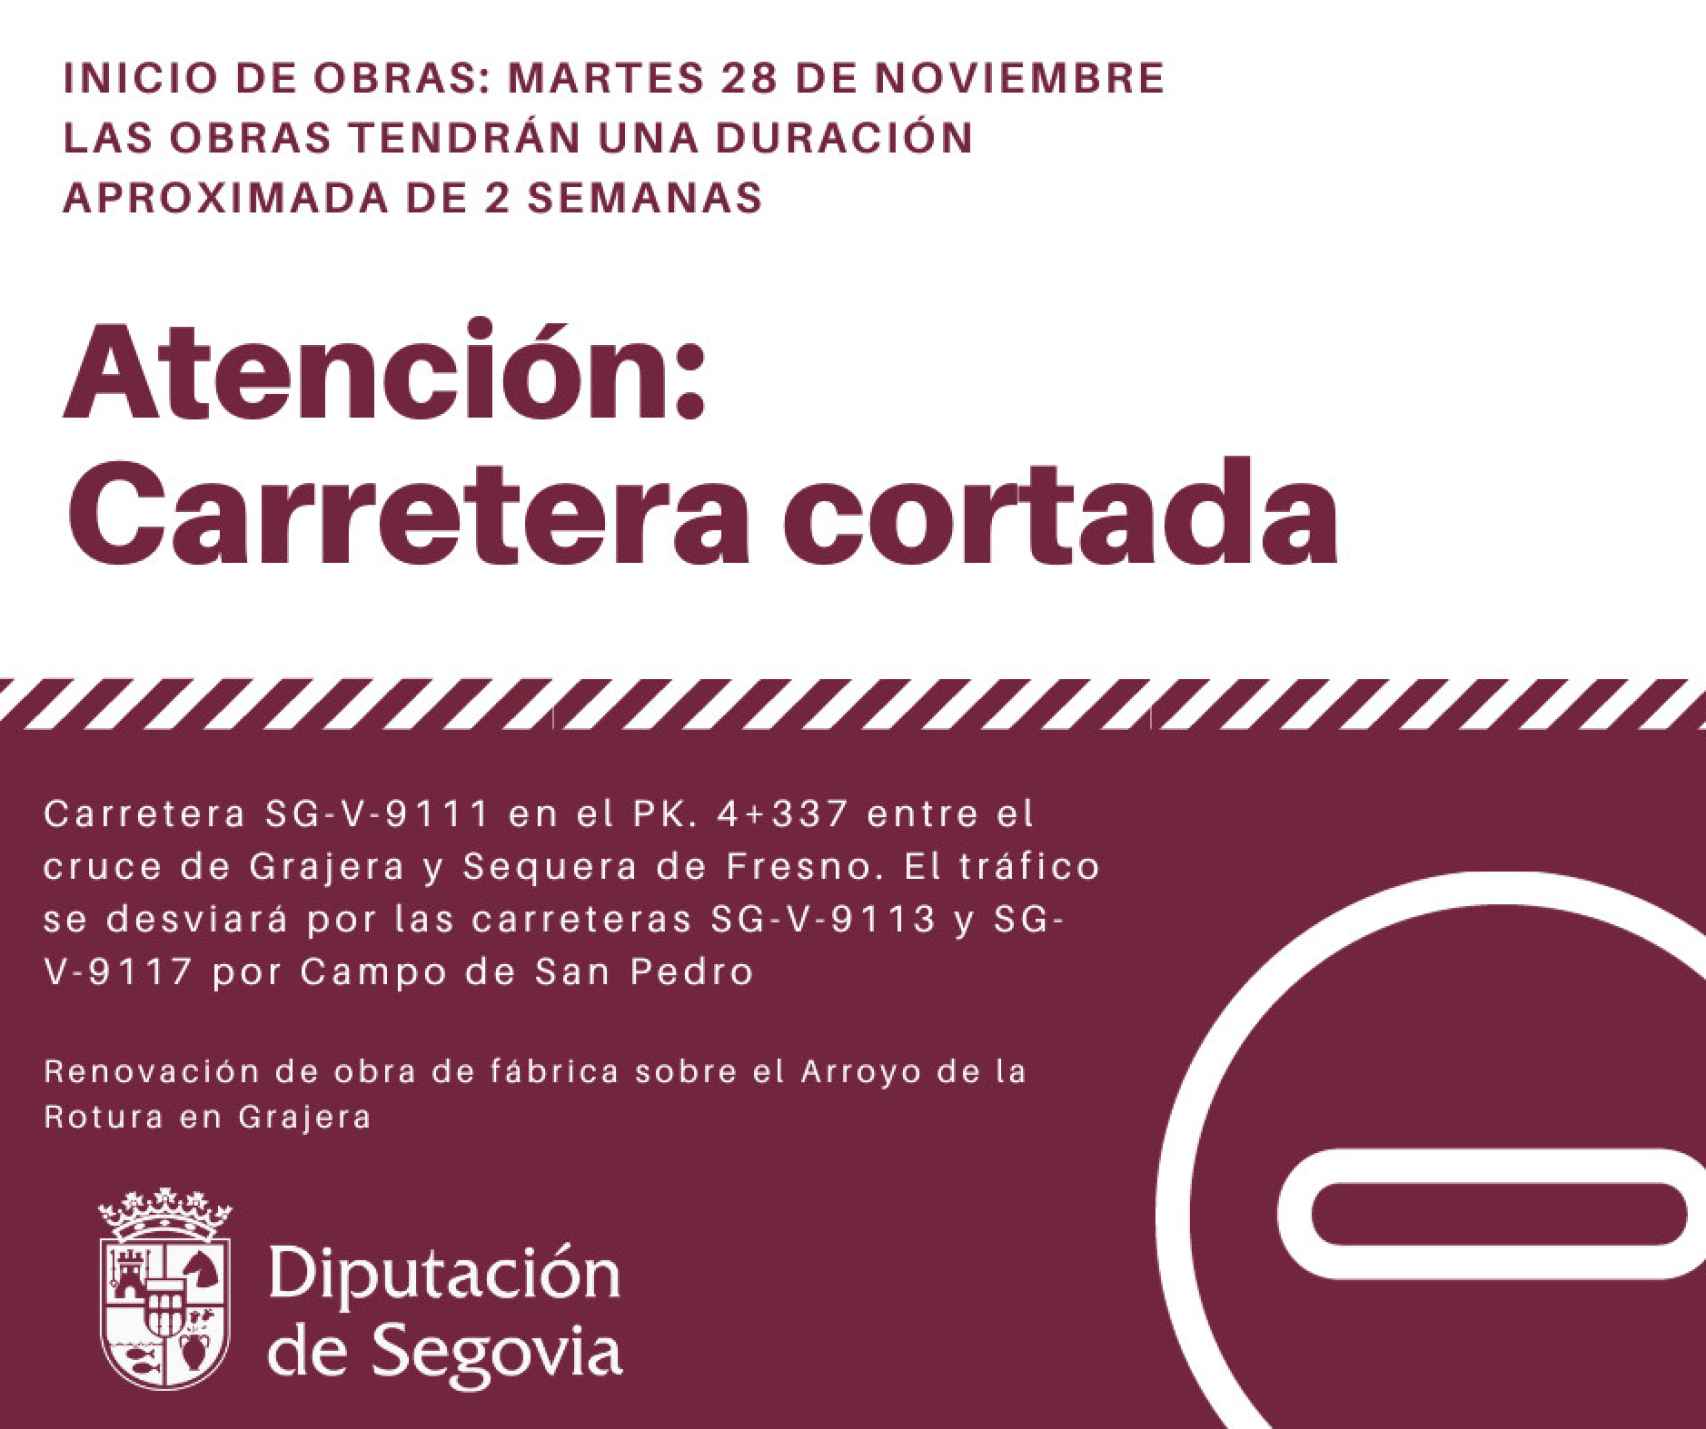 Imagen del cartel anunciador de las obras en la provincia de Segovia